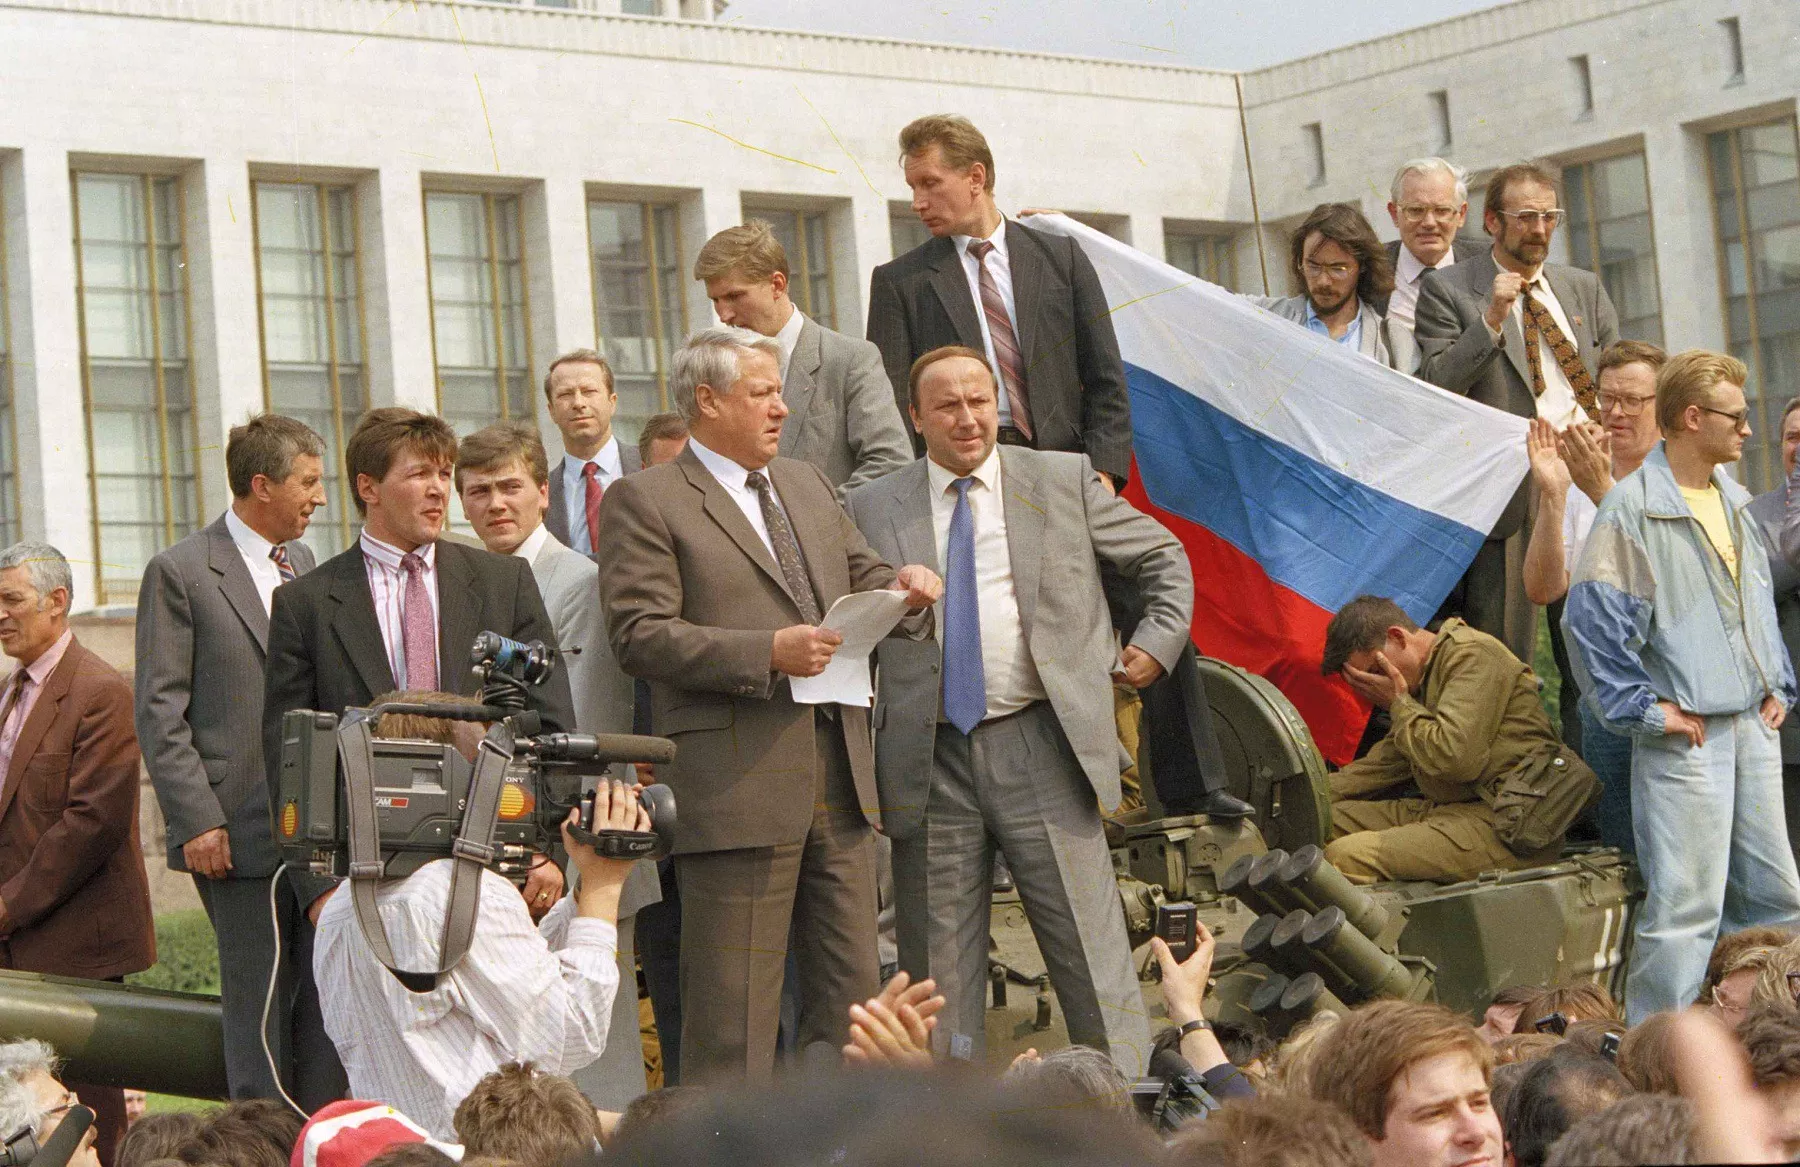 Золотова в Кремлі називають дурнем та злодієм. Але тричі йому пощастило – був охоронцем Єльцина (на фото – барикада у "Білого дому" під час путчу ГКЧП у 1991 році, Золотов праворуч від Єльцина і вище за всіх у кадрі), потім Собчака, а потім і Путіна